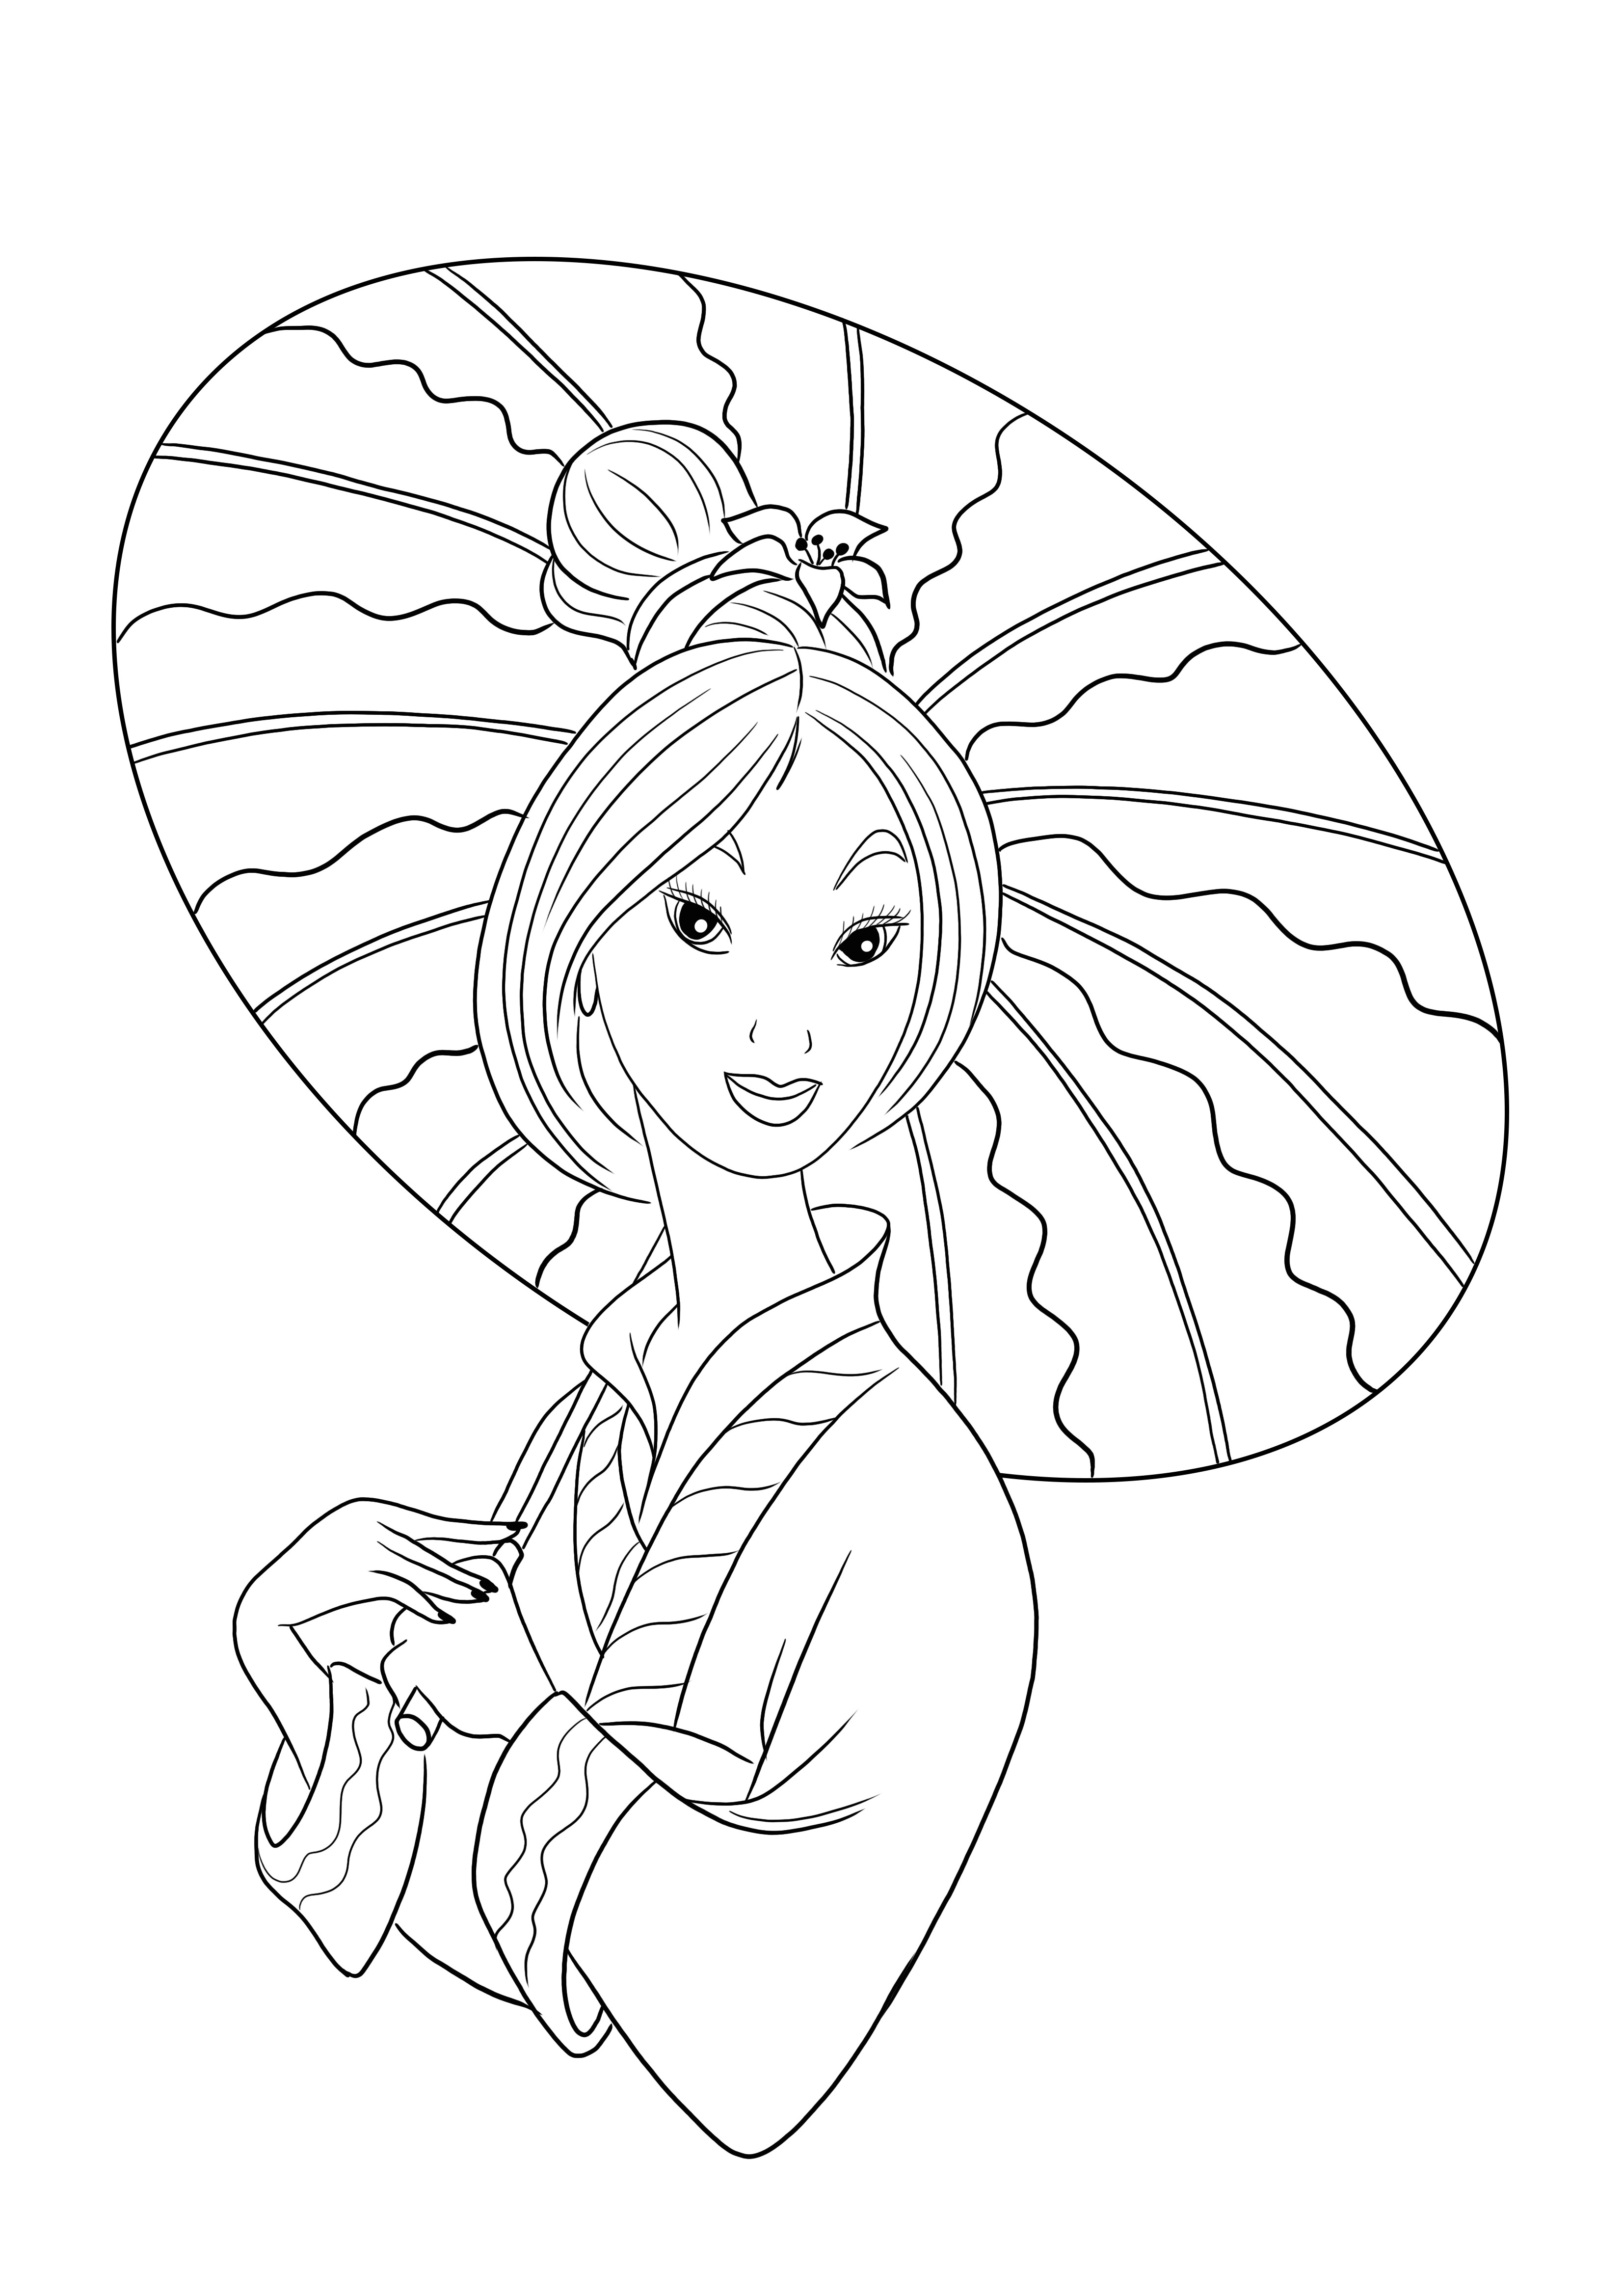 Prenses Mulan, çocukların eğlenmesi için resim boyamak ve yazdırmak için ücretsiz